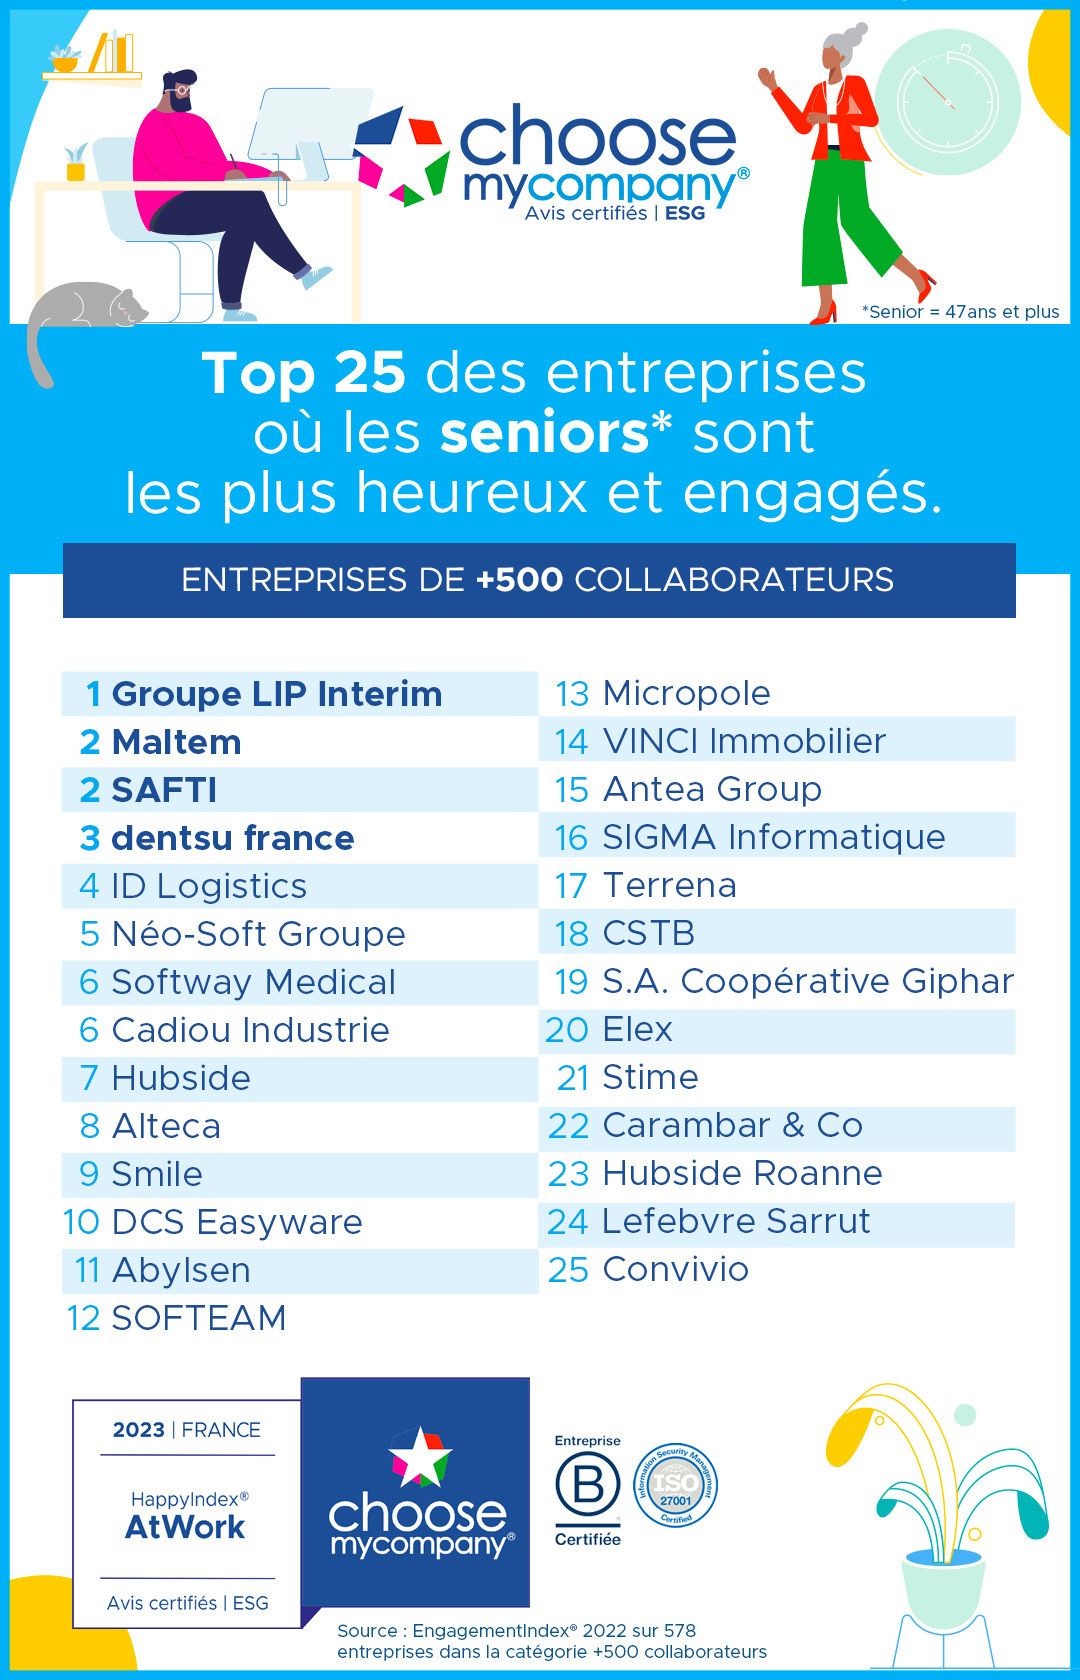 Happy at Work : Softway Medical dans le Top 25 des entreprises où les seniors sont les plus heureux et engagés